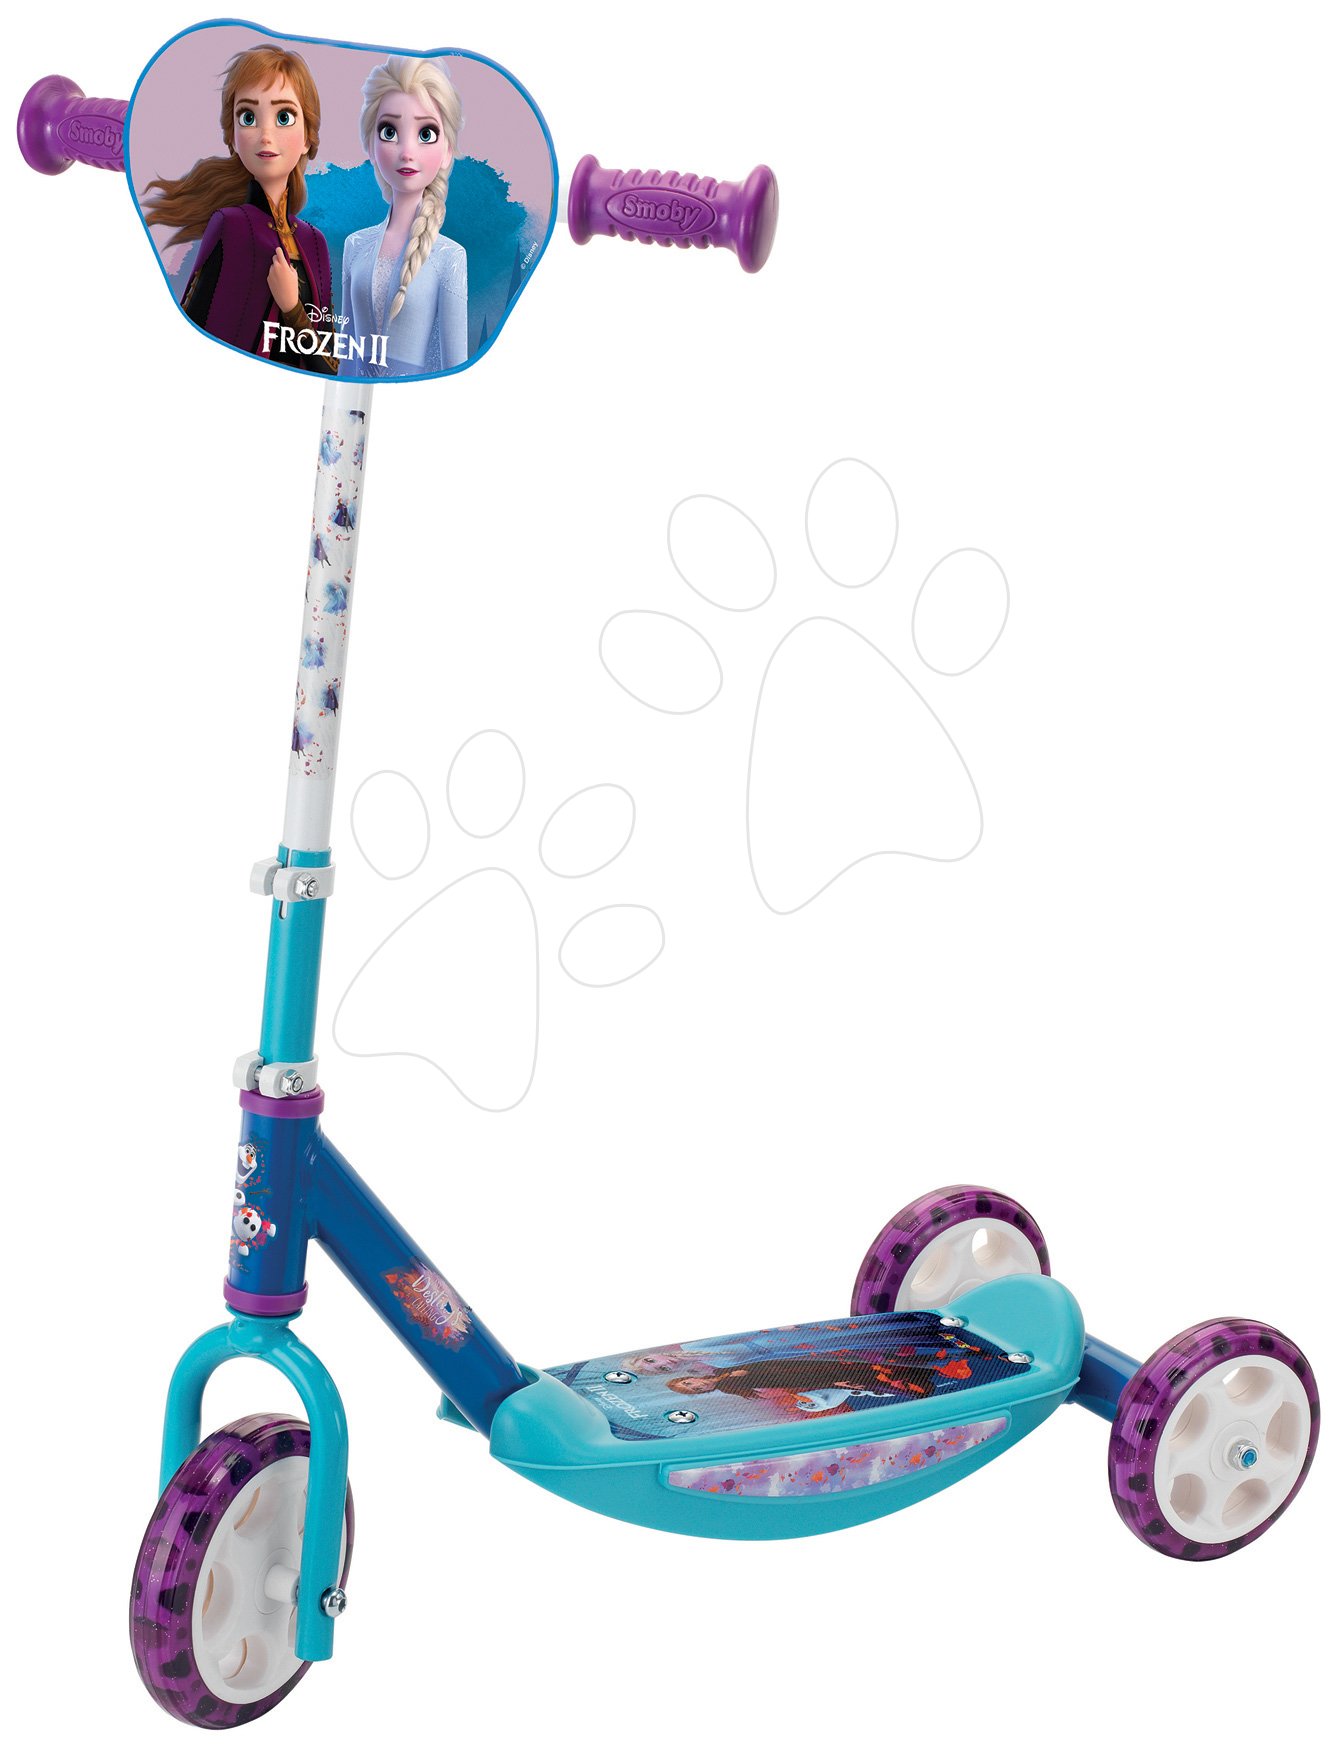 Sluit een verzekering af tijdelijk pijp Frozen 2 Disney Smoby Three-Wheel Scooter with adjustable ha